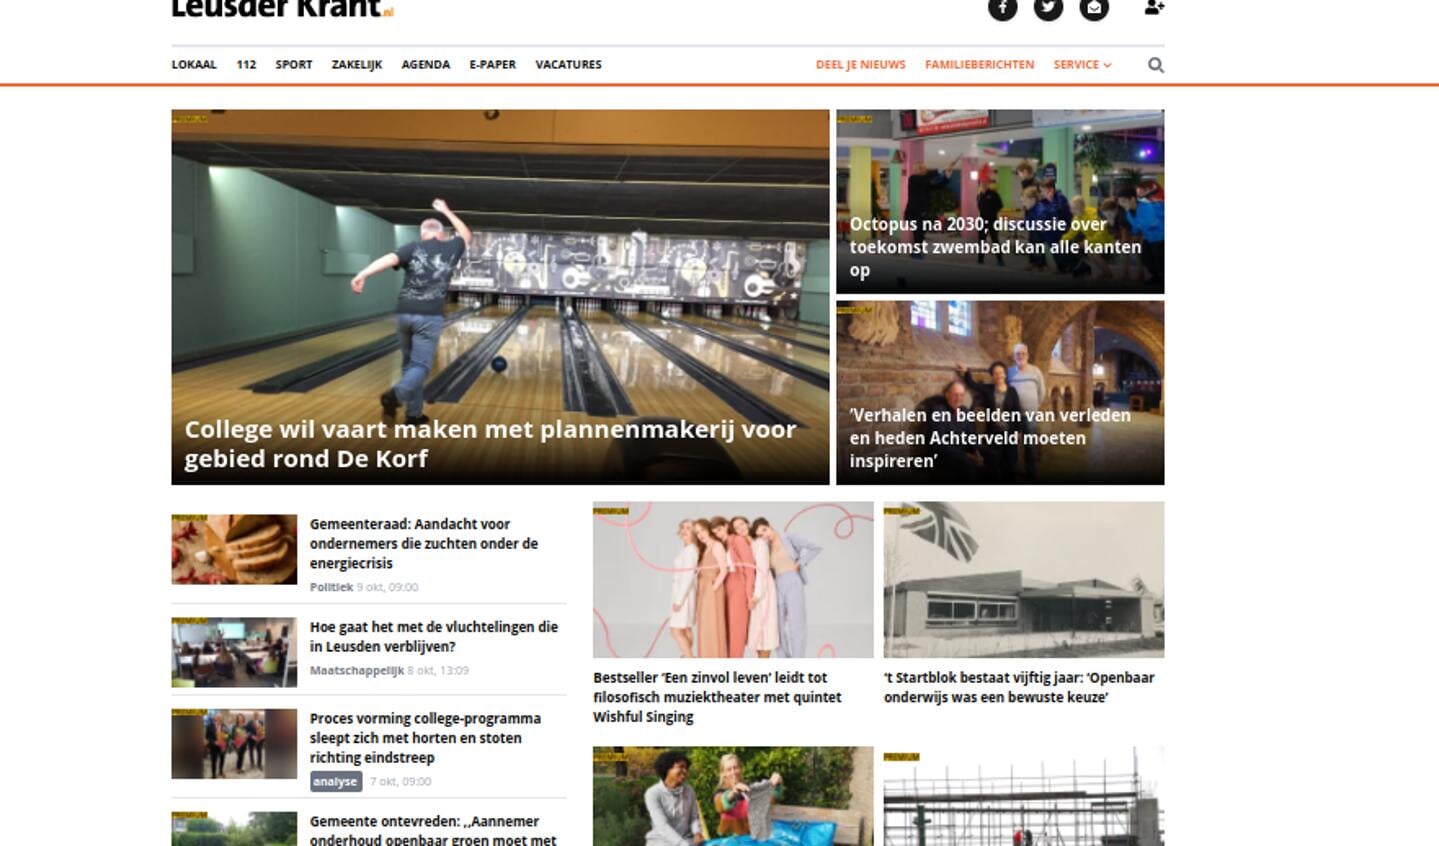 Een overzicht van de meest recente premiumartikelen is te vinden op www.leusderkrant.nl.